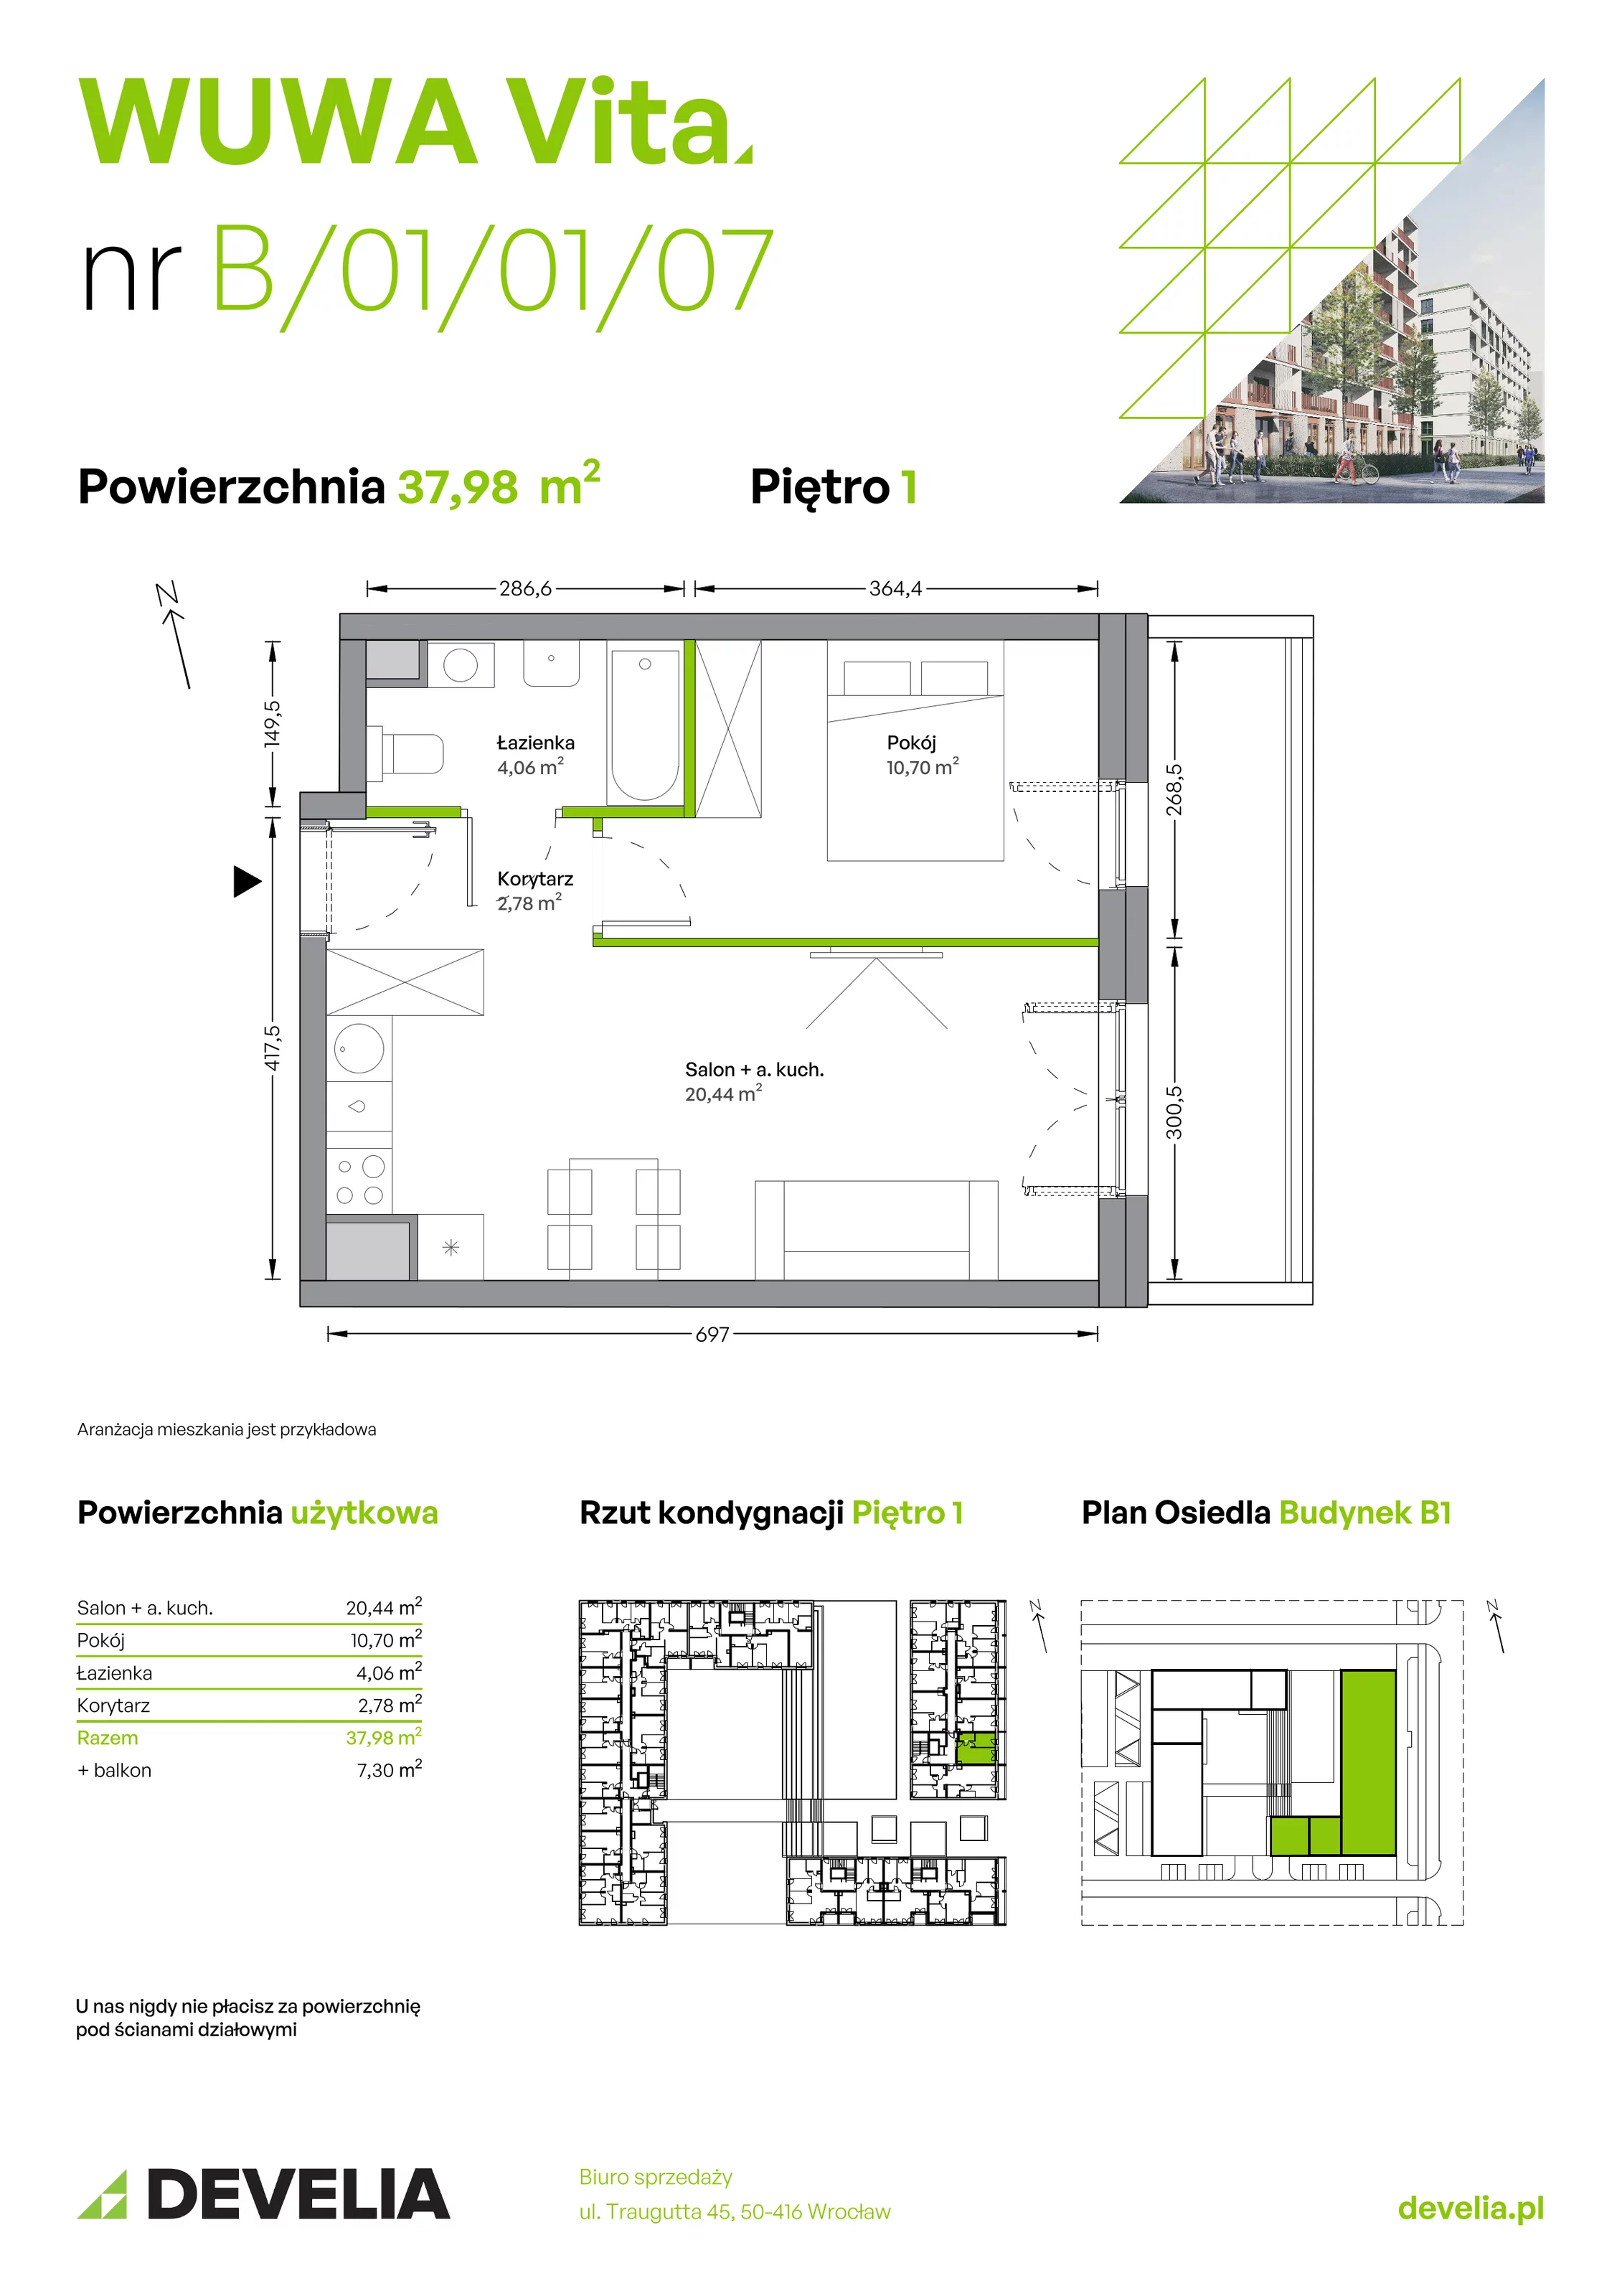 Mieszkanie 37,98 m², piętro 1, oferta nr B.01.01.07, WUWA Vita, Wrocław, Żerniki, Fabryczna, ul. Tadeusza Brzozy